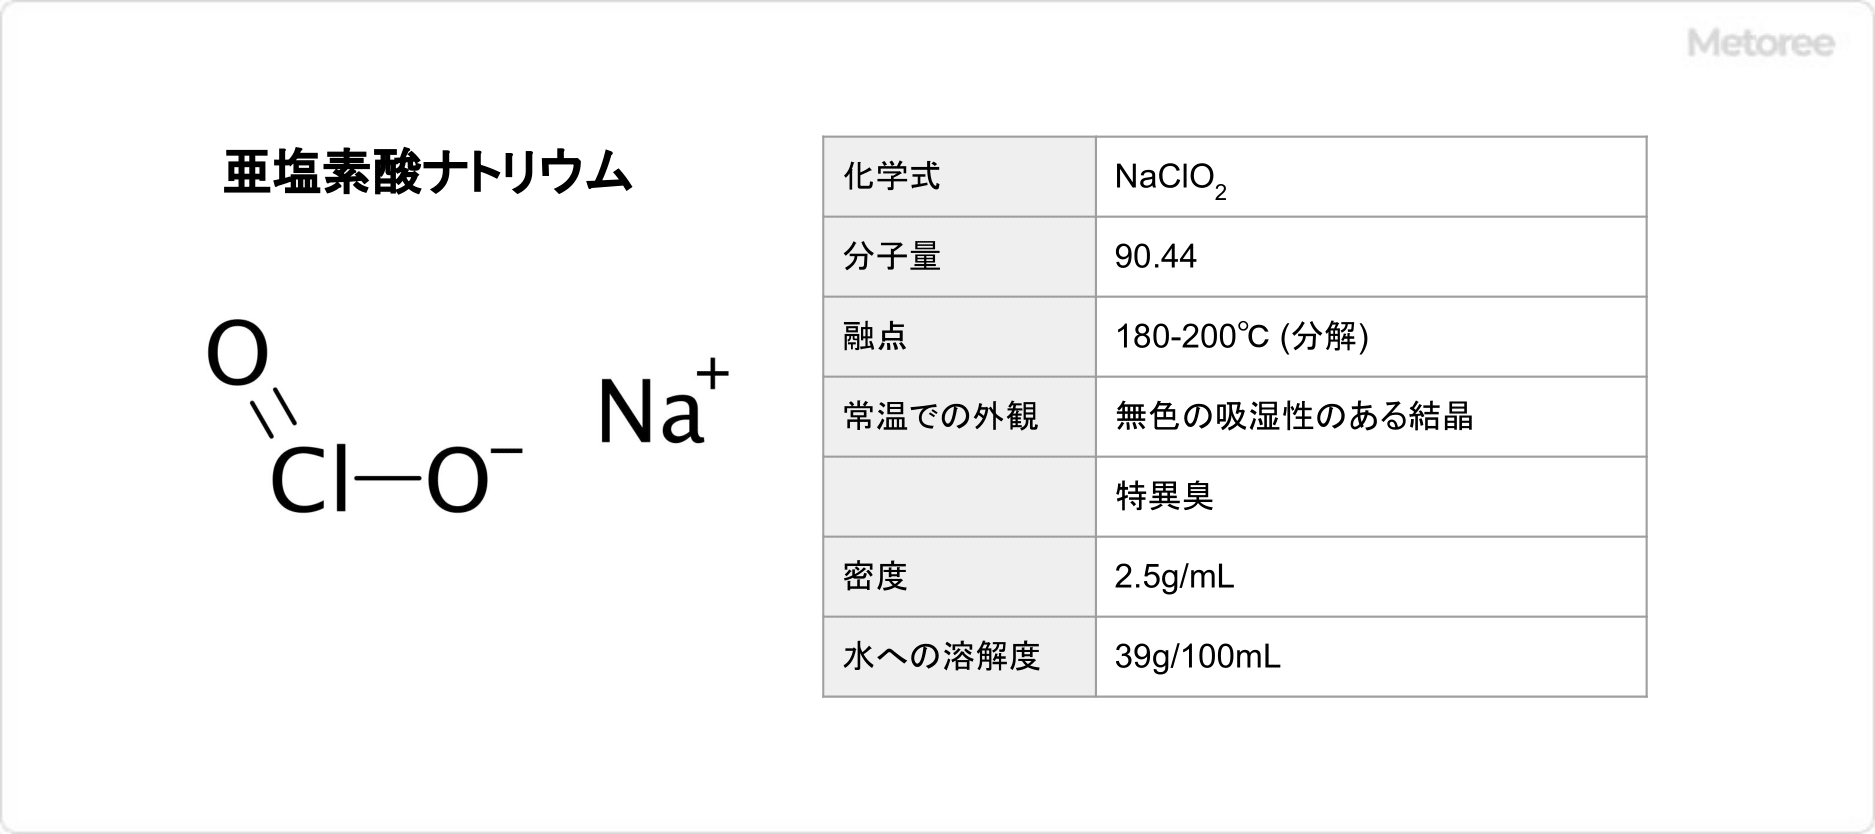 亜塩素酸ナトリウムの基本情報